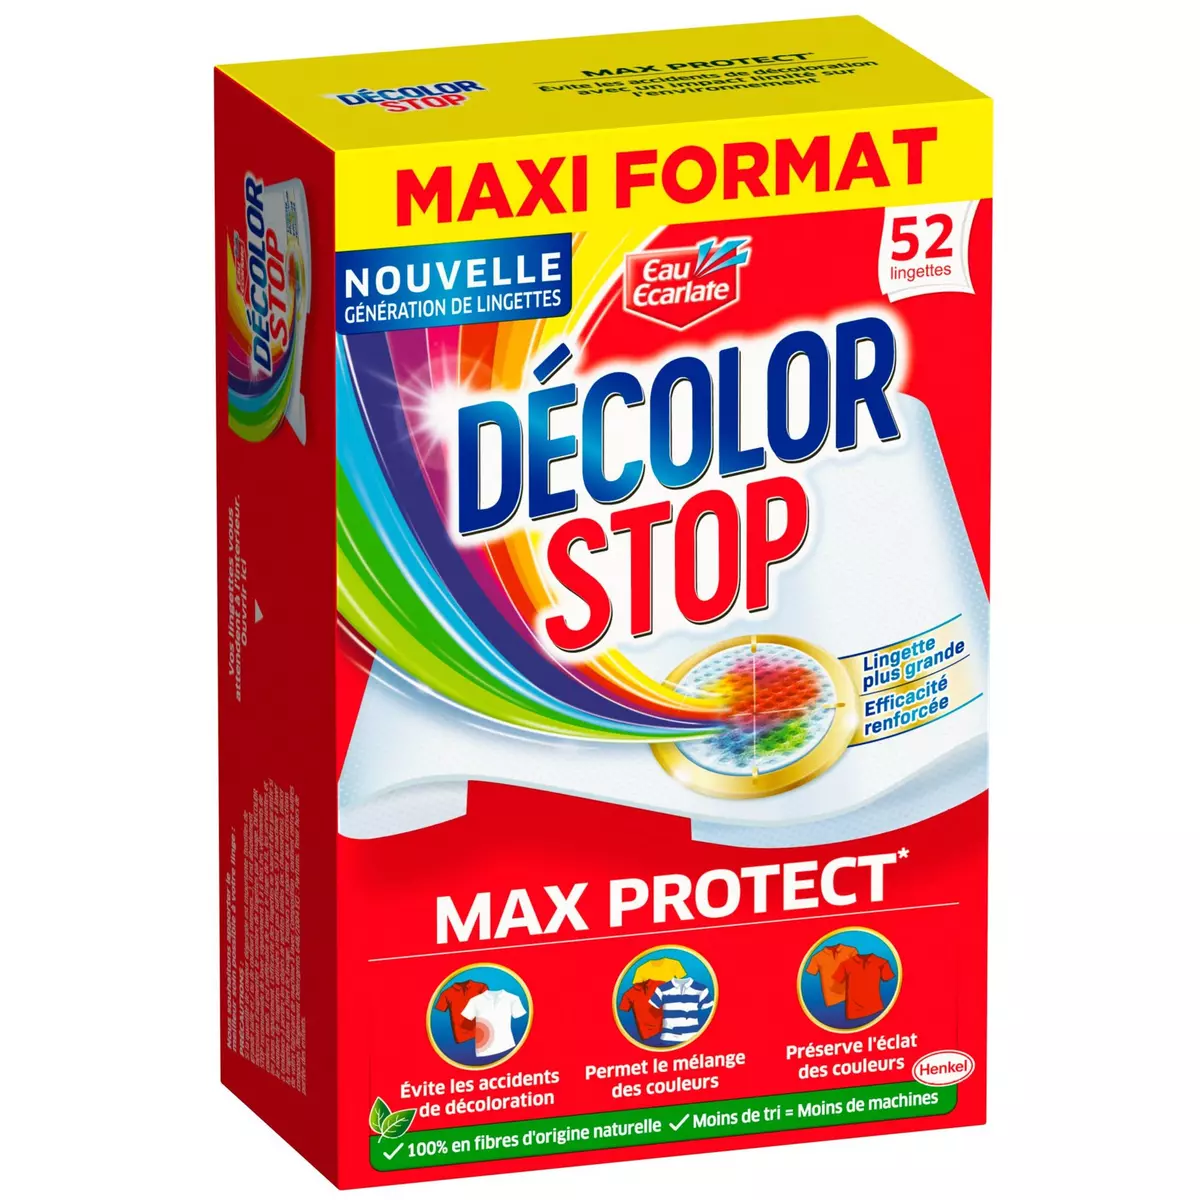 DECOLOR STOP Lingettes anti-décoloration Max Protect 52 lingettes